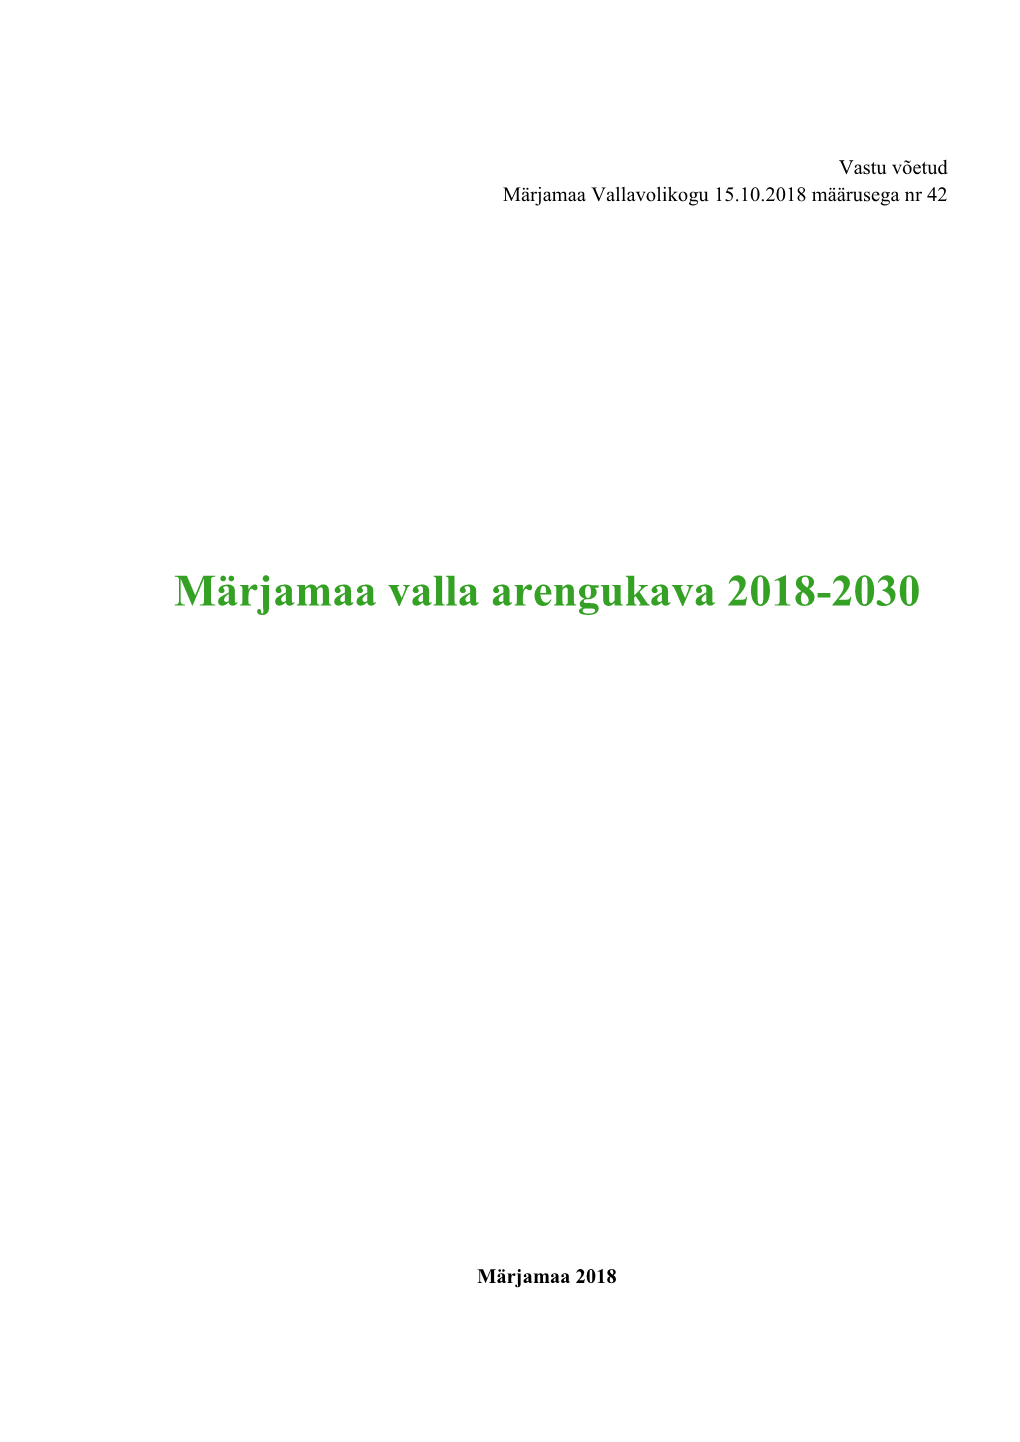 Märjamaa Valla Arengukava 2018-2030